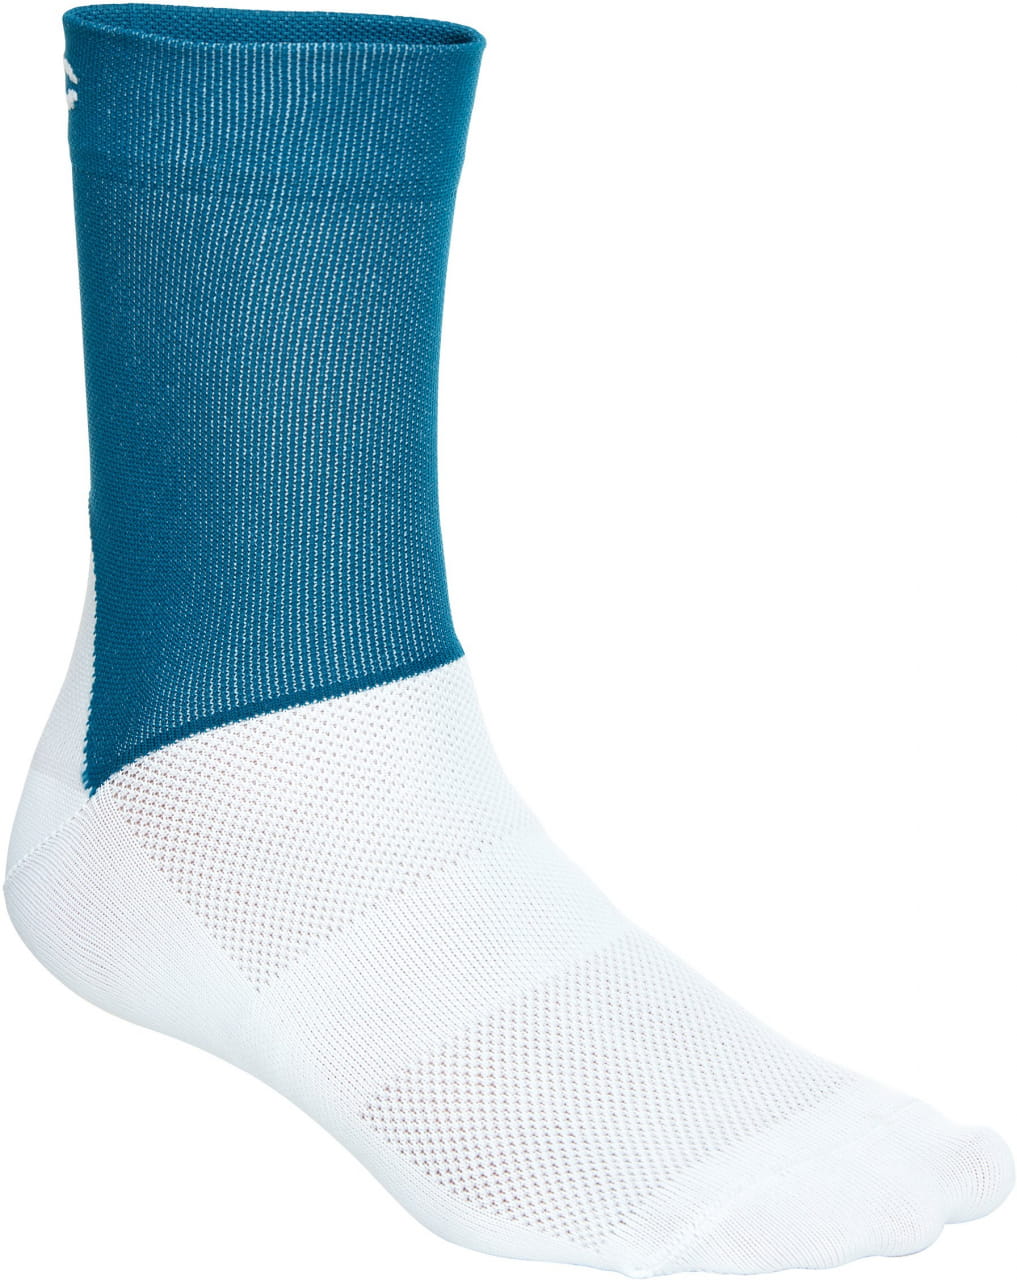 Odolné cyklistické ponožky POC Essential Road Socks